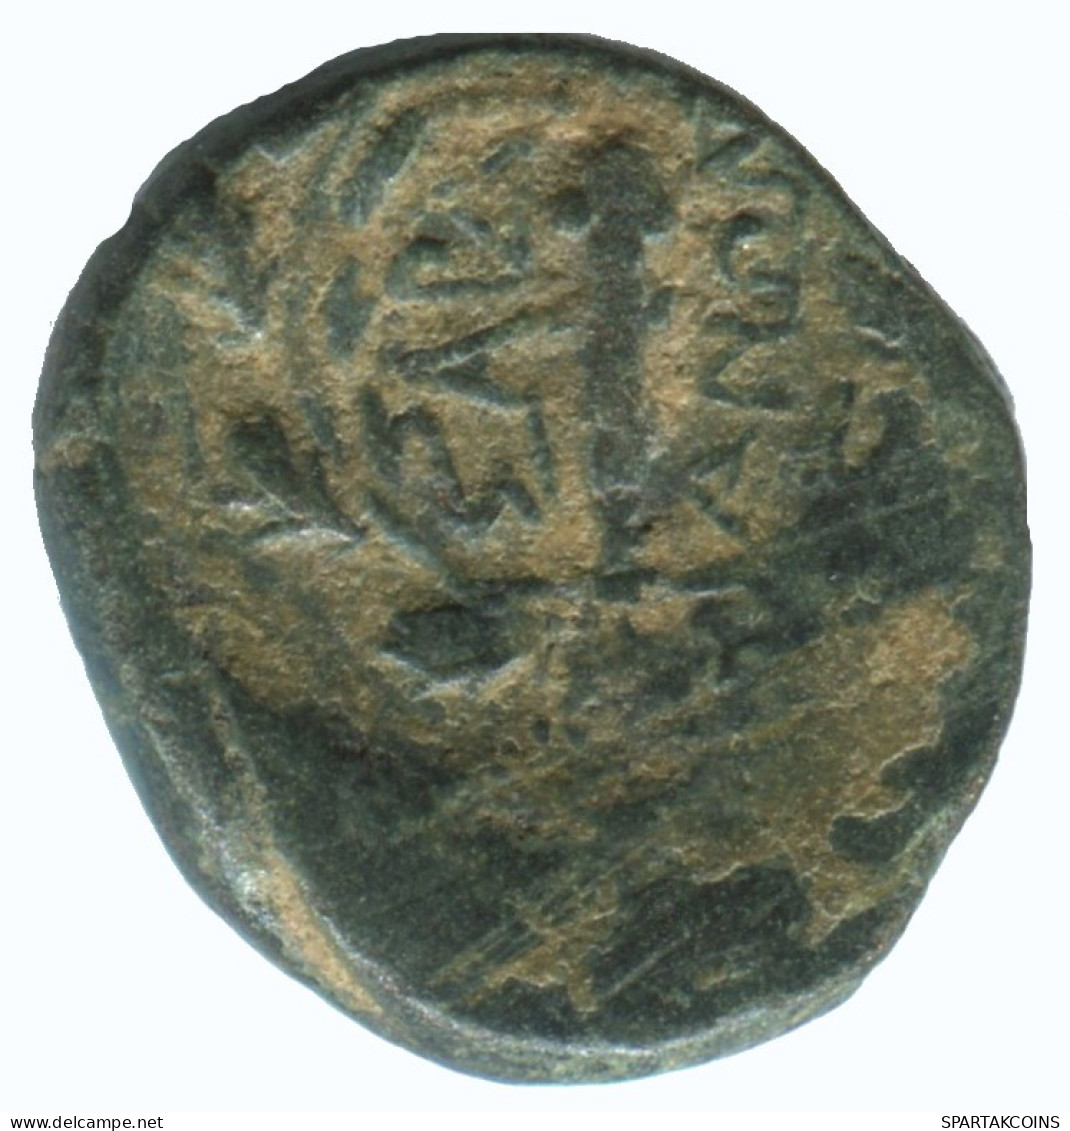 WREATH Authentic Original Ancient GREEK Coin 3.7g/17mm #NNN1425.9.U.A - Grecques